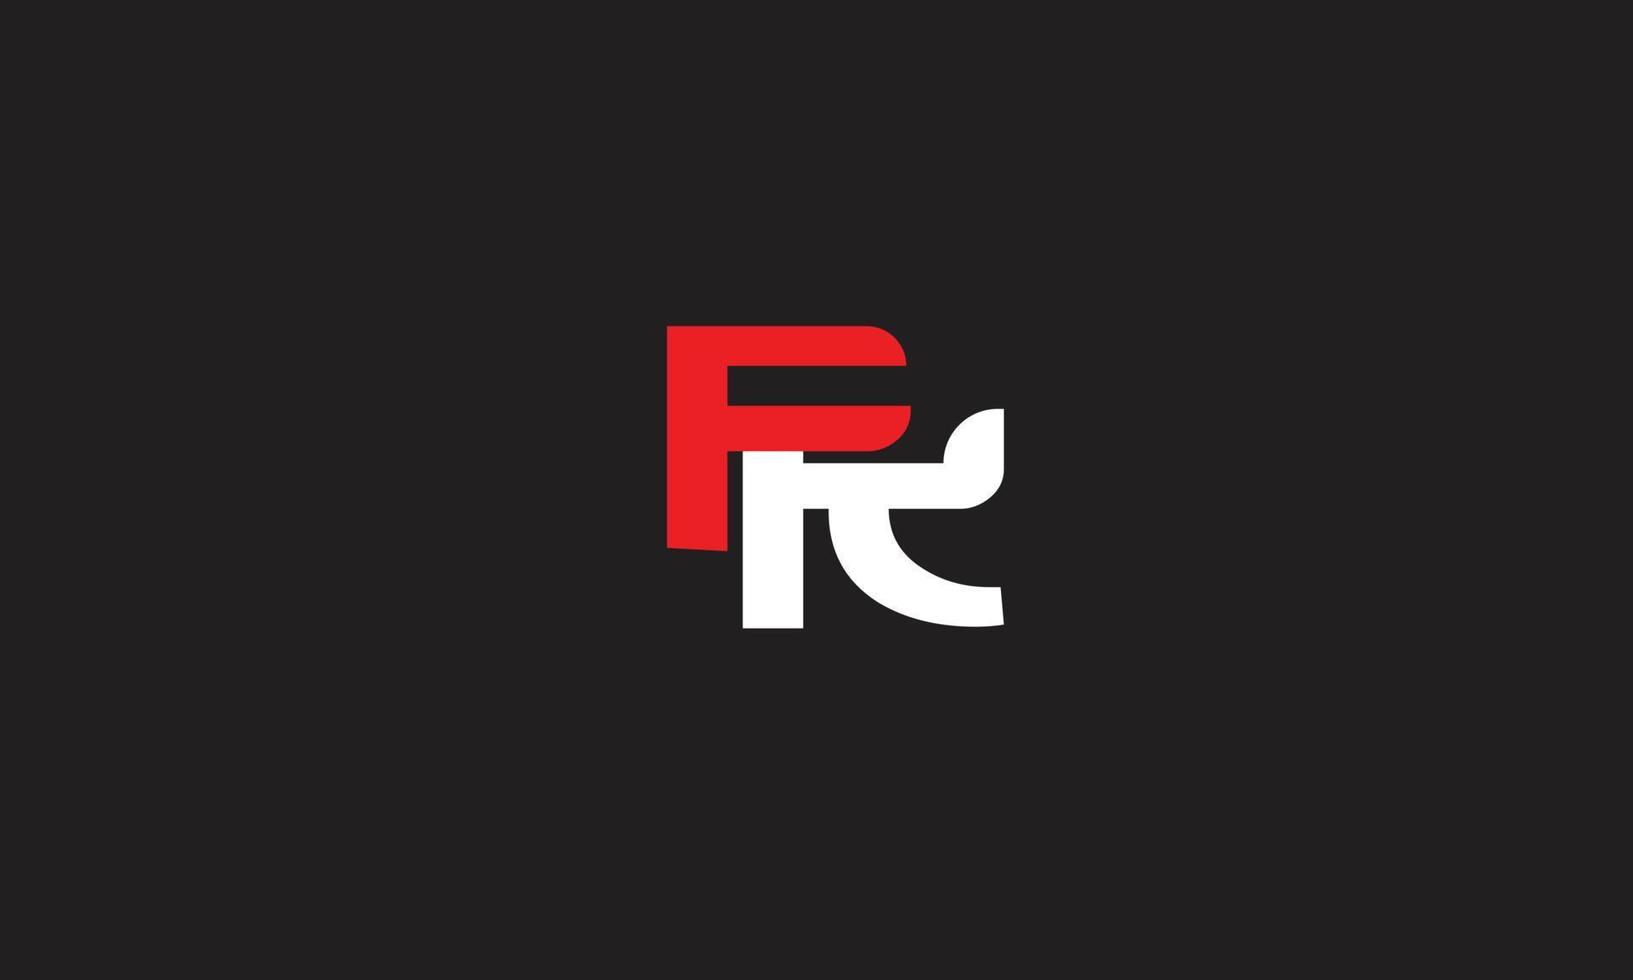 alphabet buchstaben initialen monogramm logo fr, rf, f und r vektor